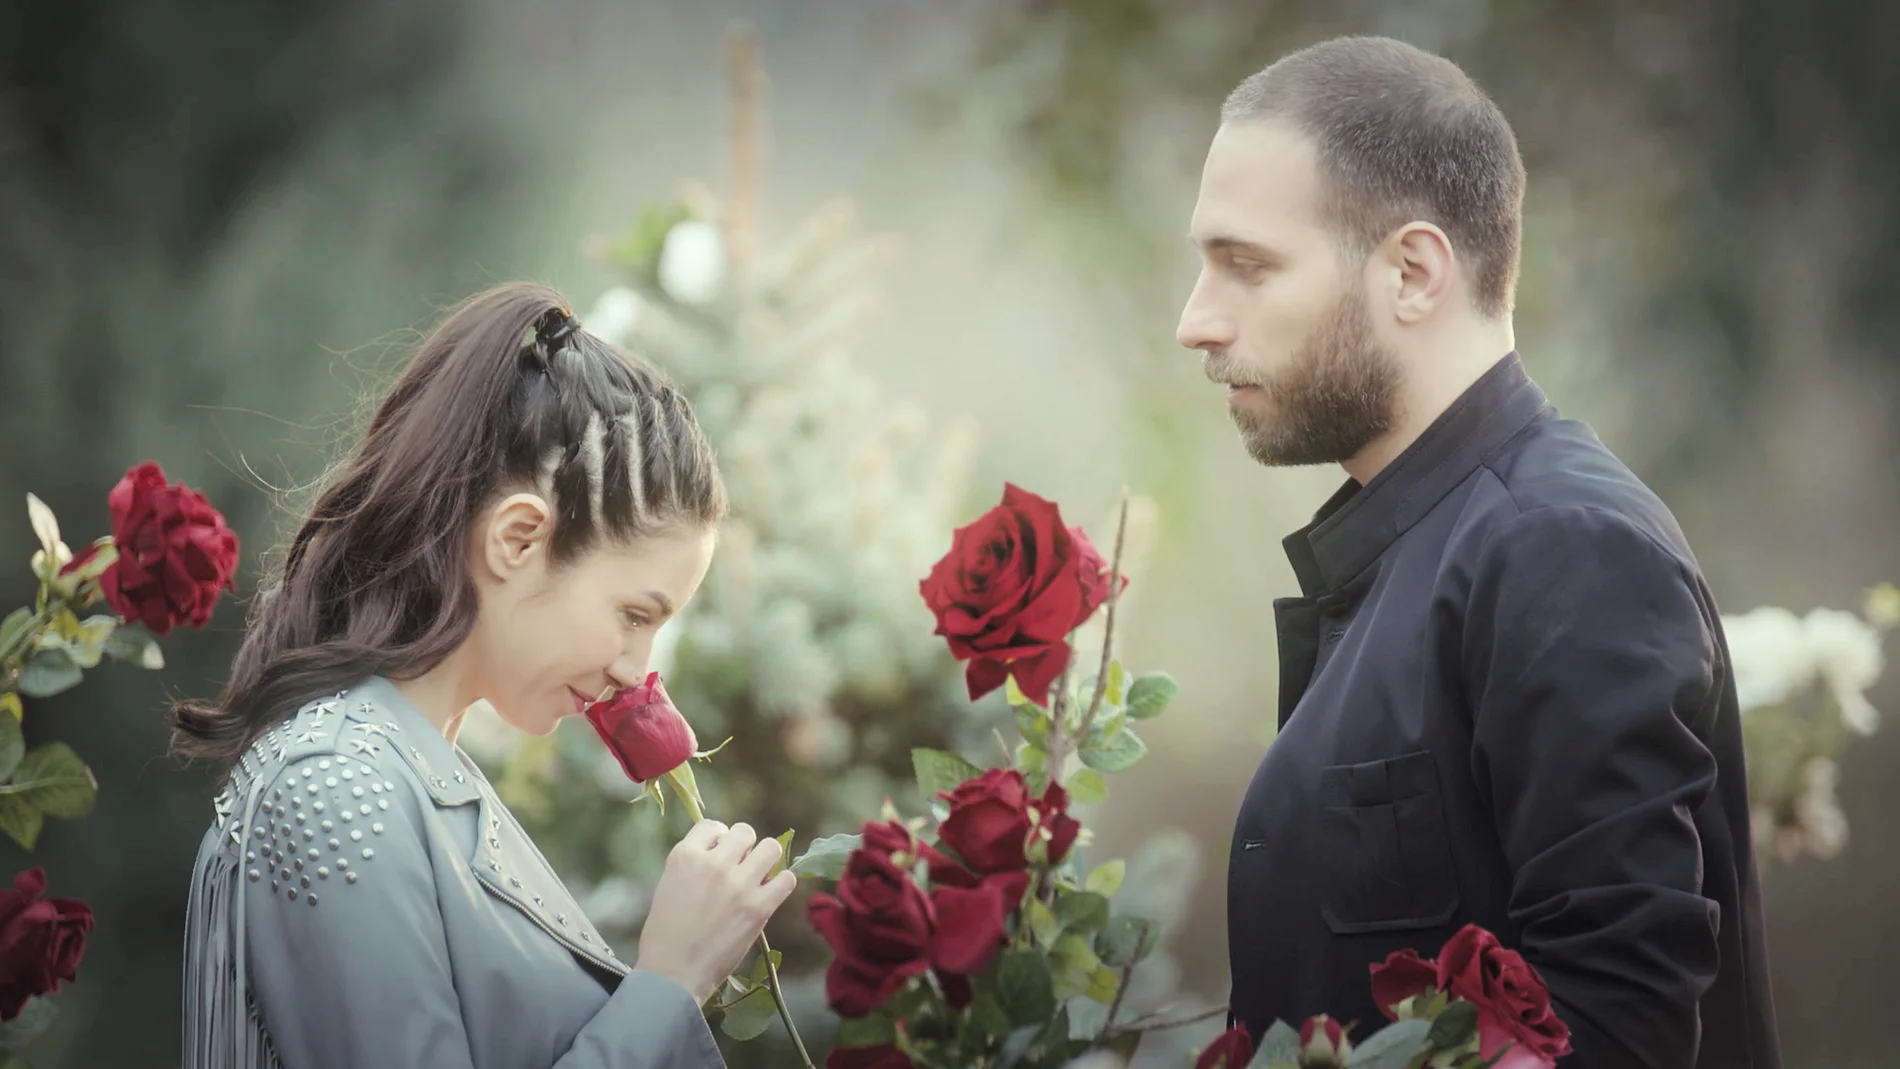 Piril recuerda su romance con Mert, una relación de rosas y espinas 